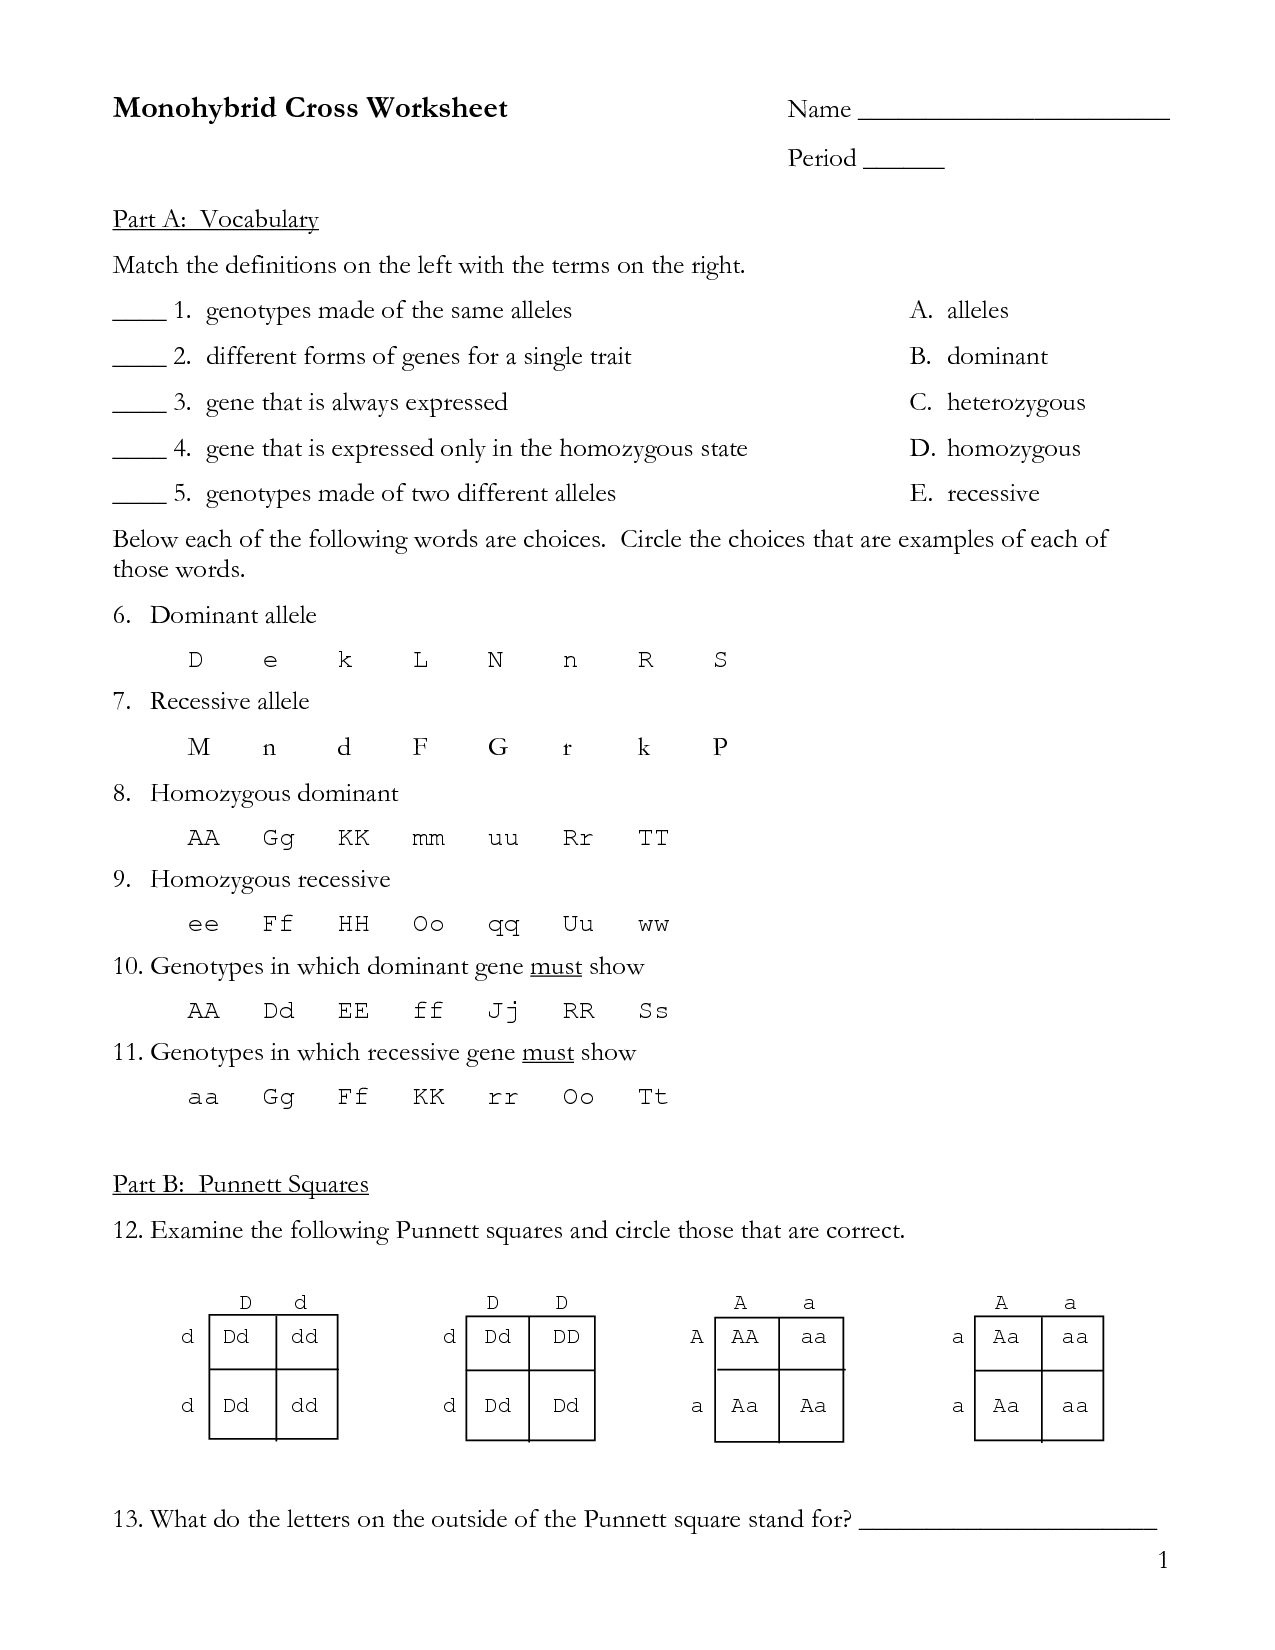 punnett-square-dihybrid-cross-worksheet-answer-key